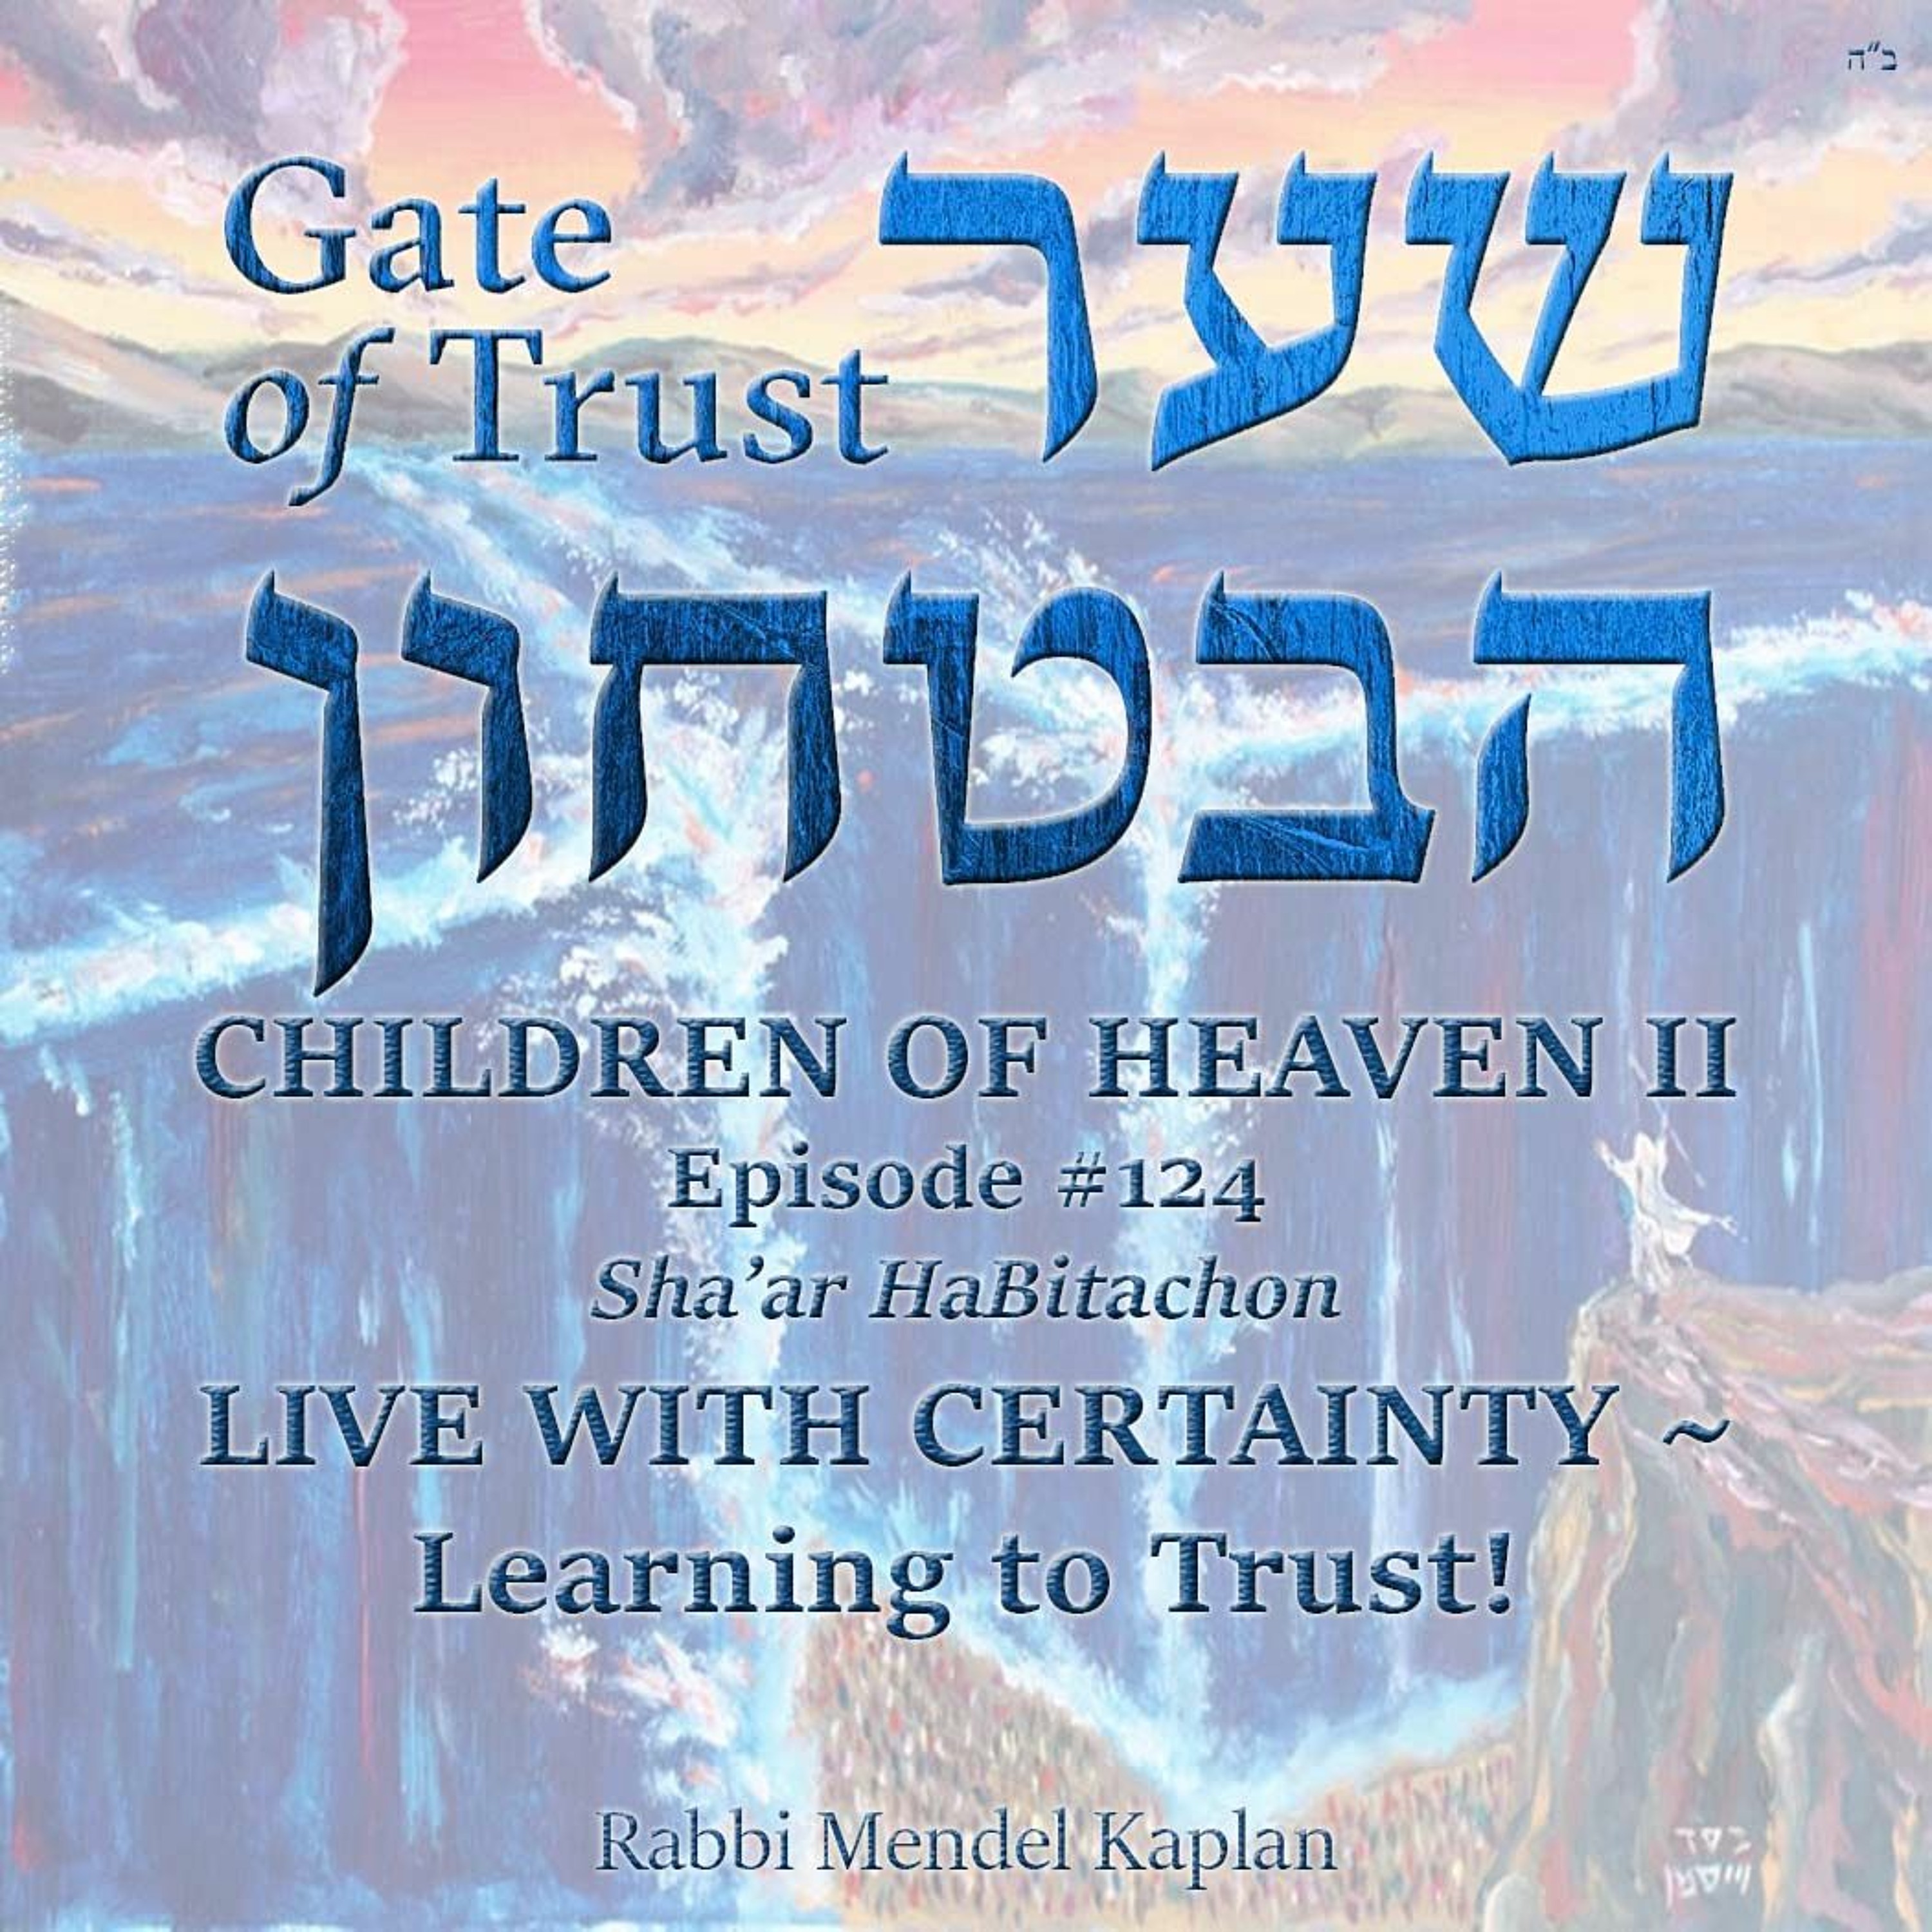 CHILDREN OF HEAVEN II